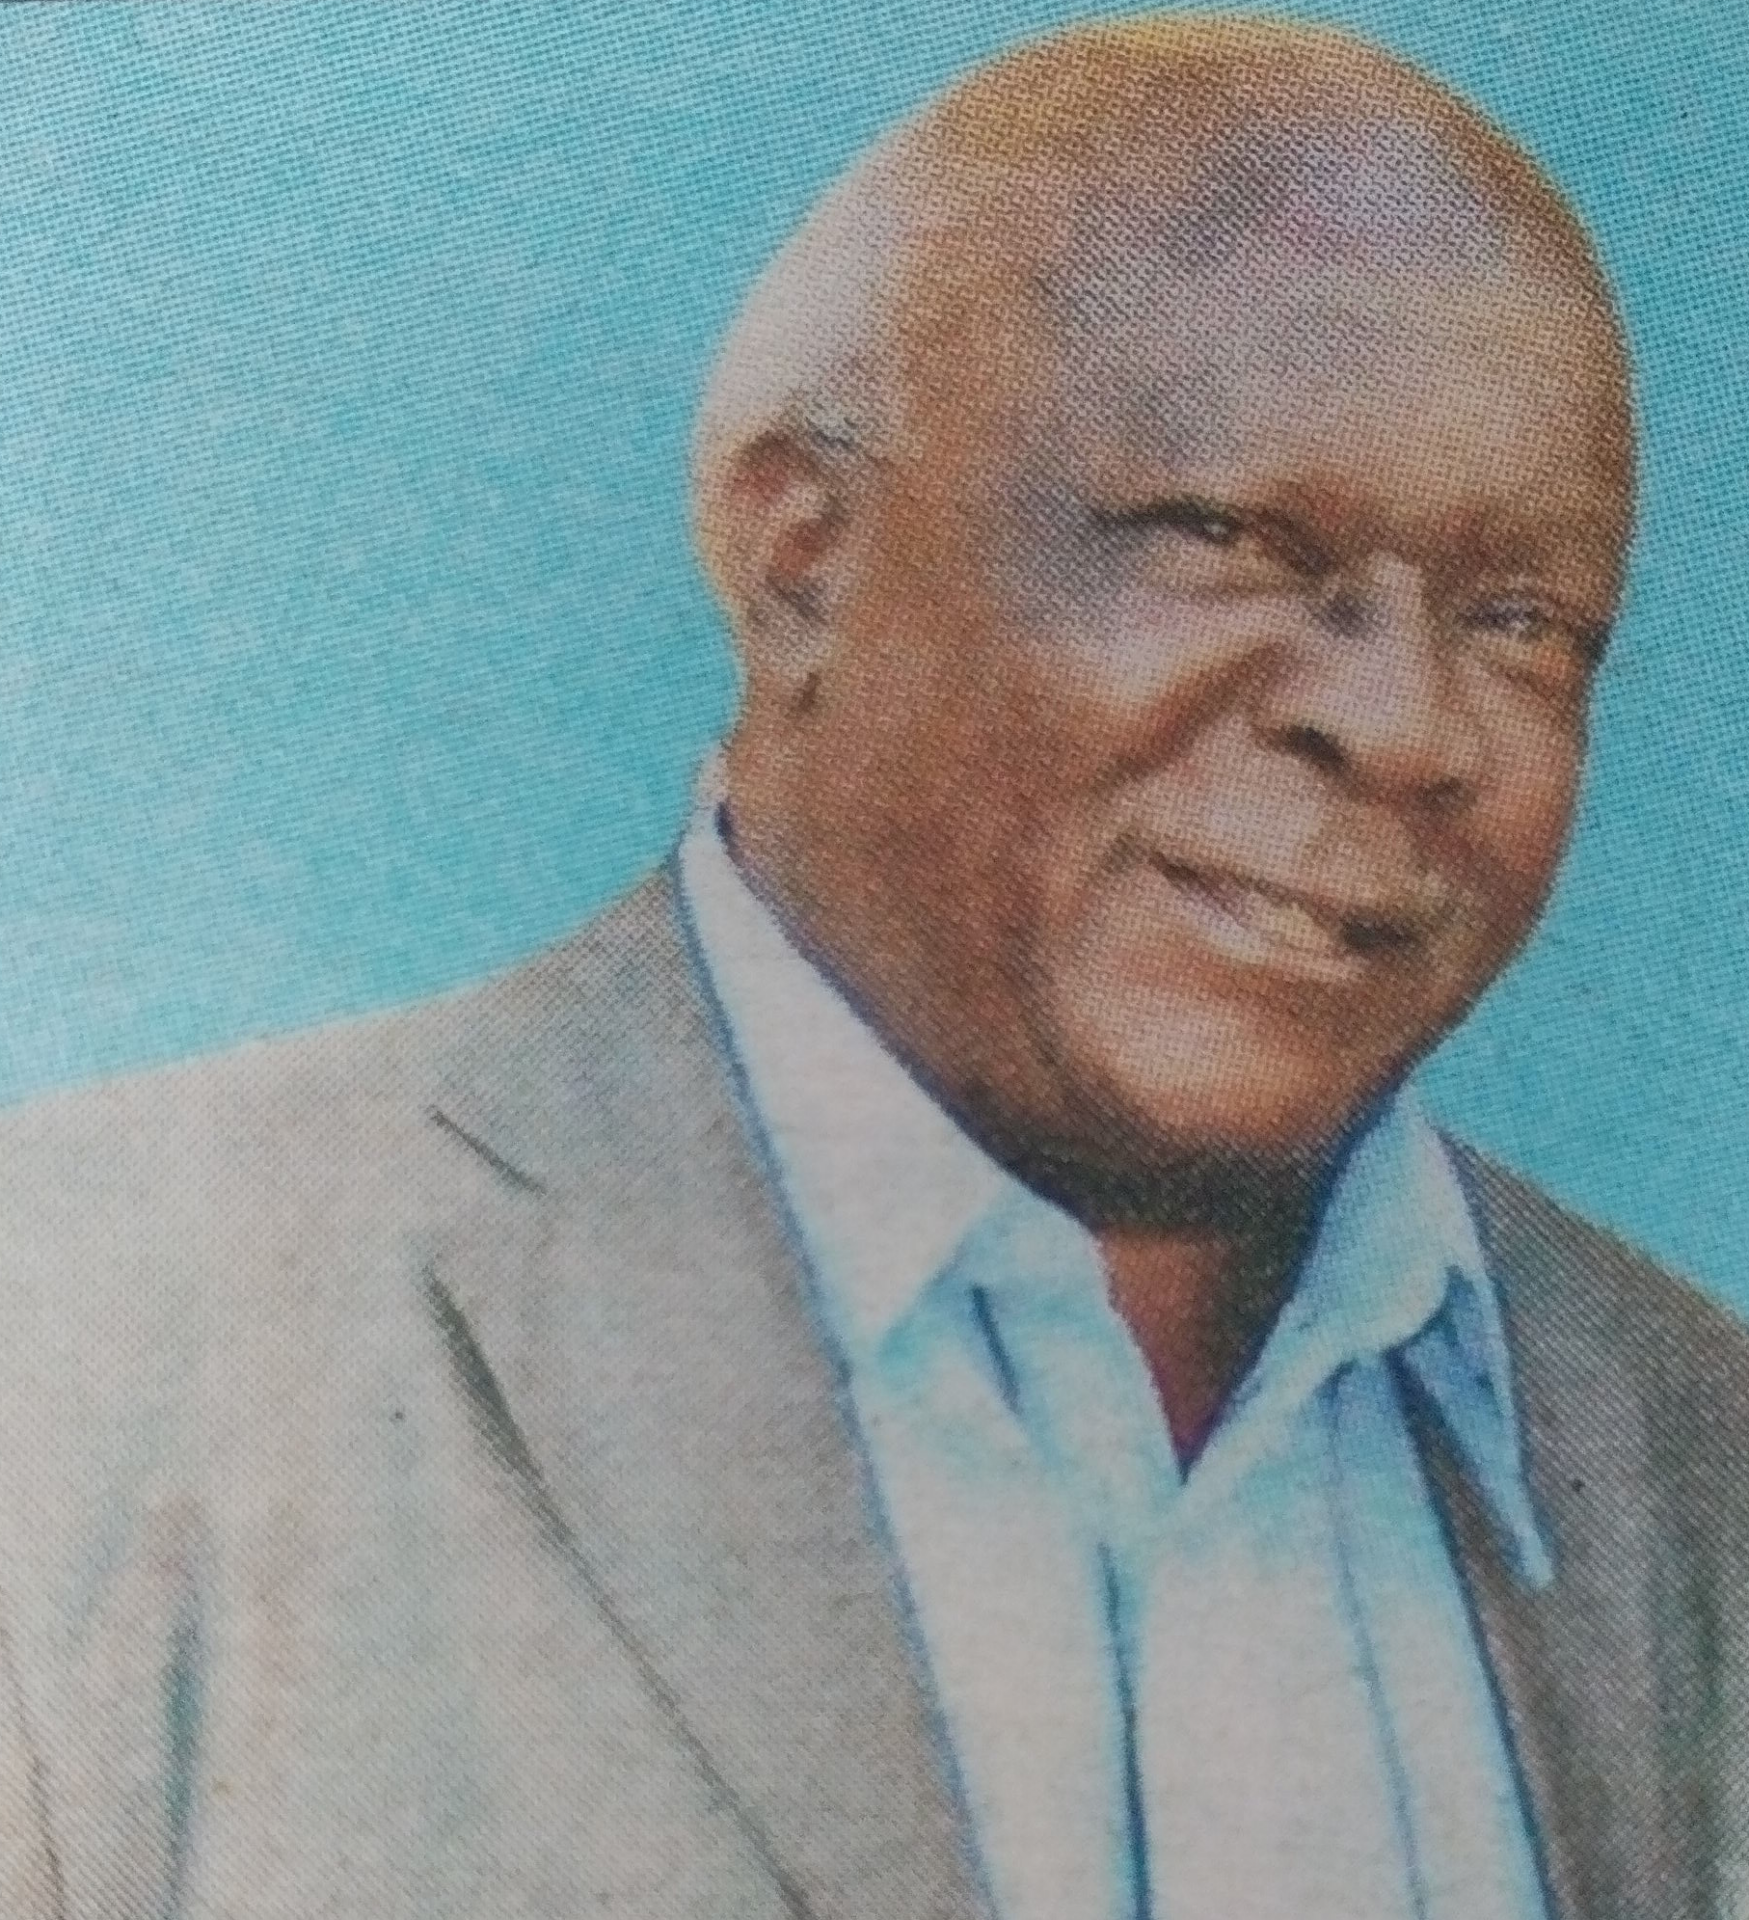 Obituary Image of Johnson Muturi Kigio